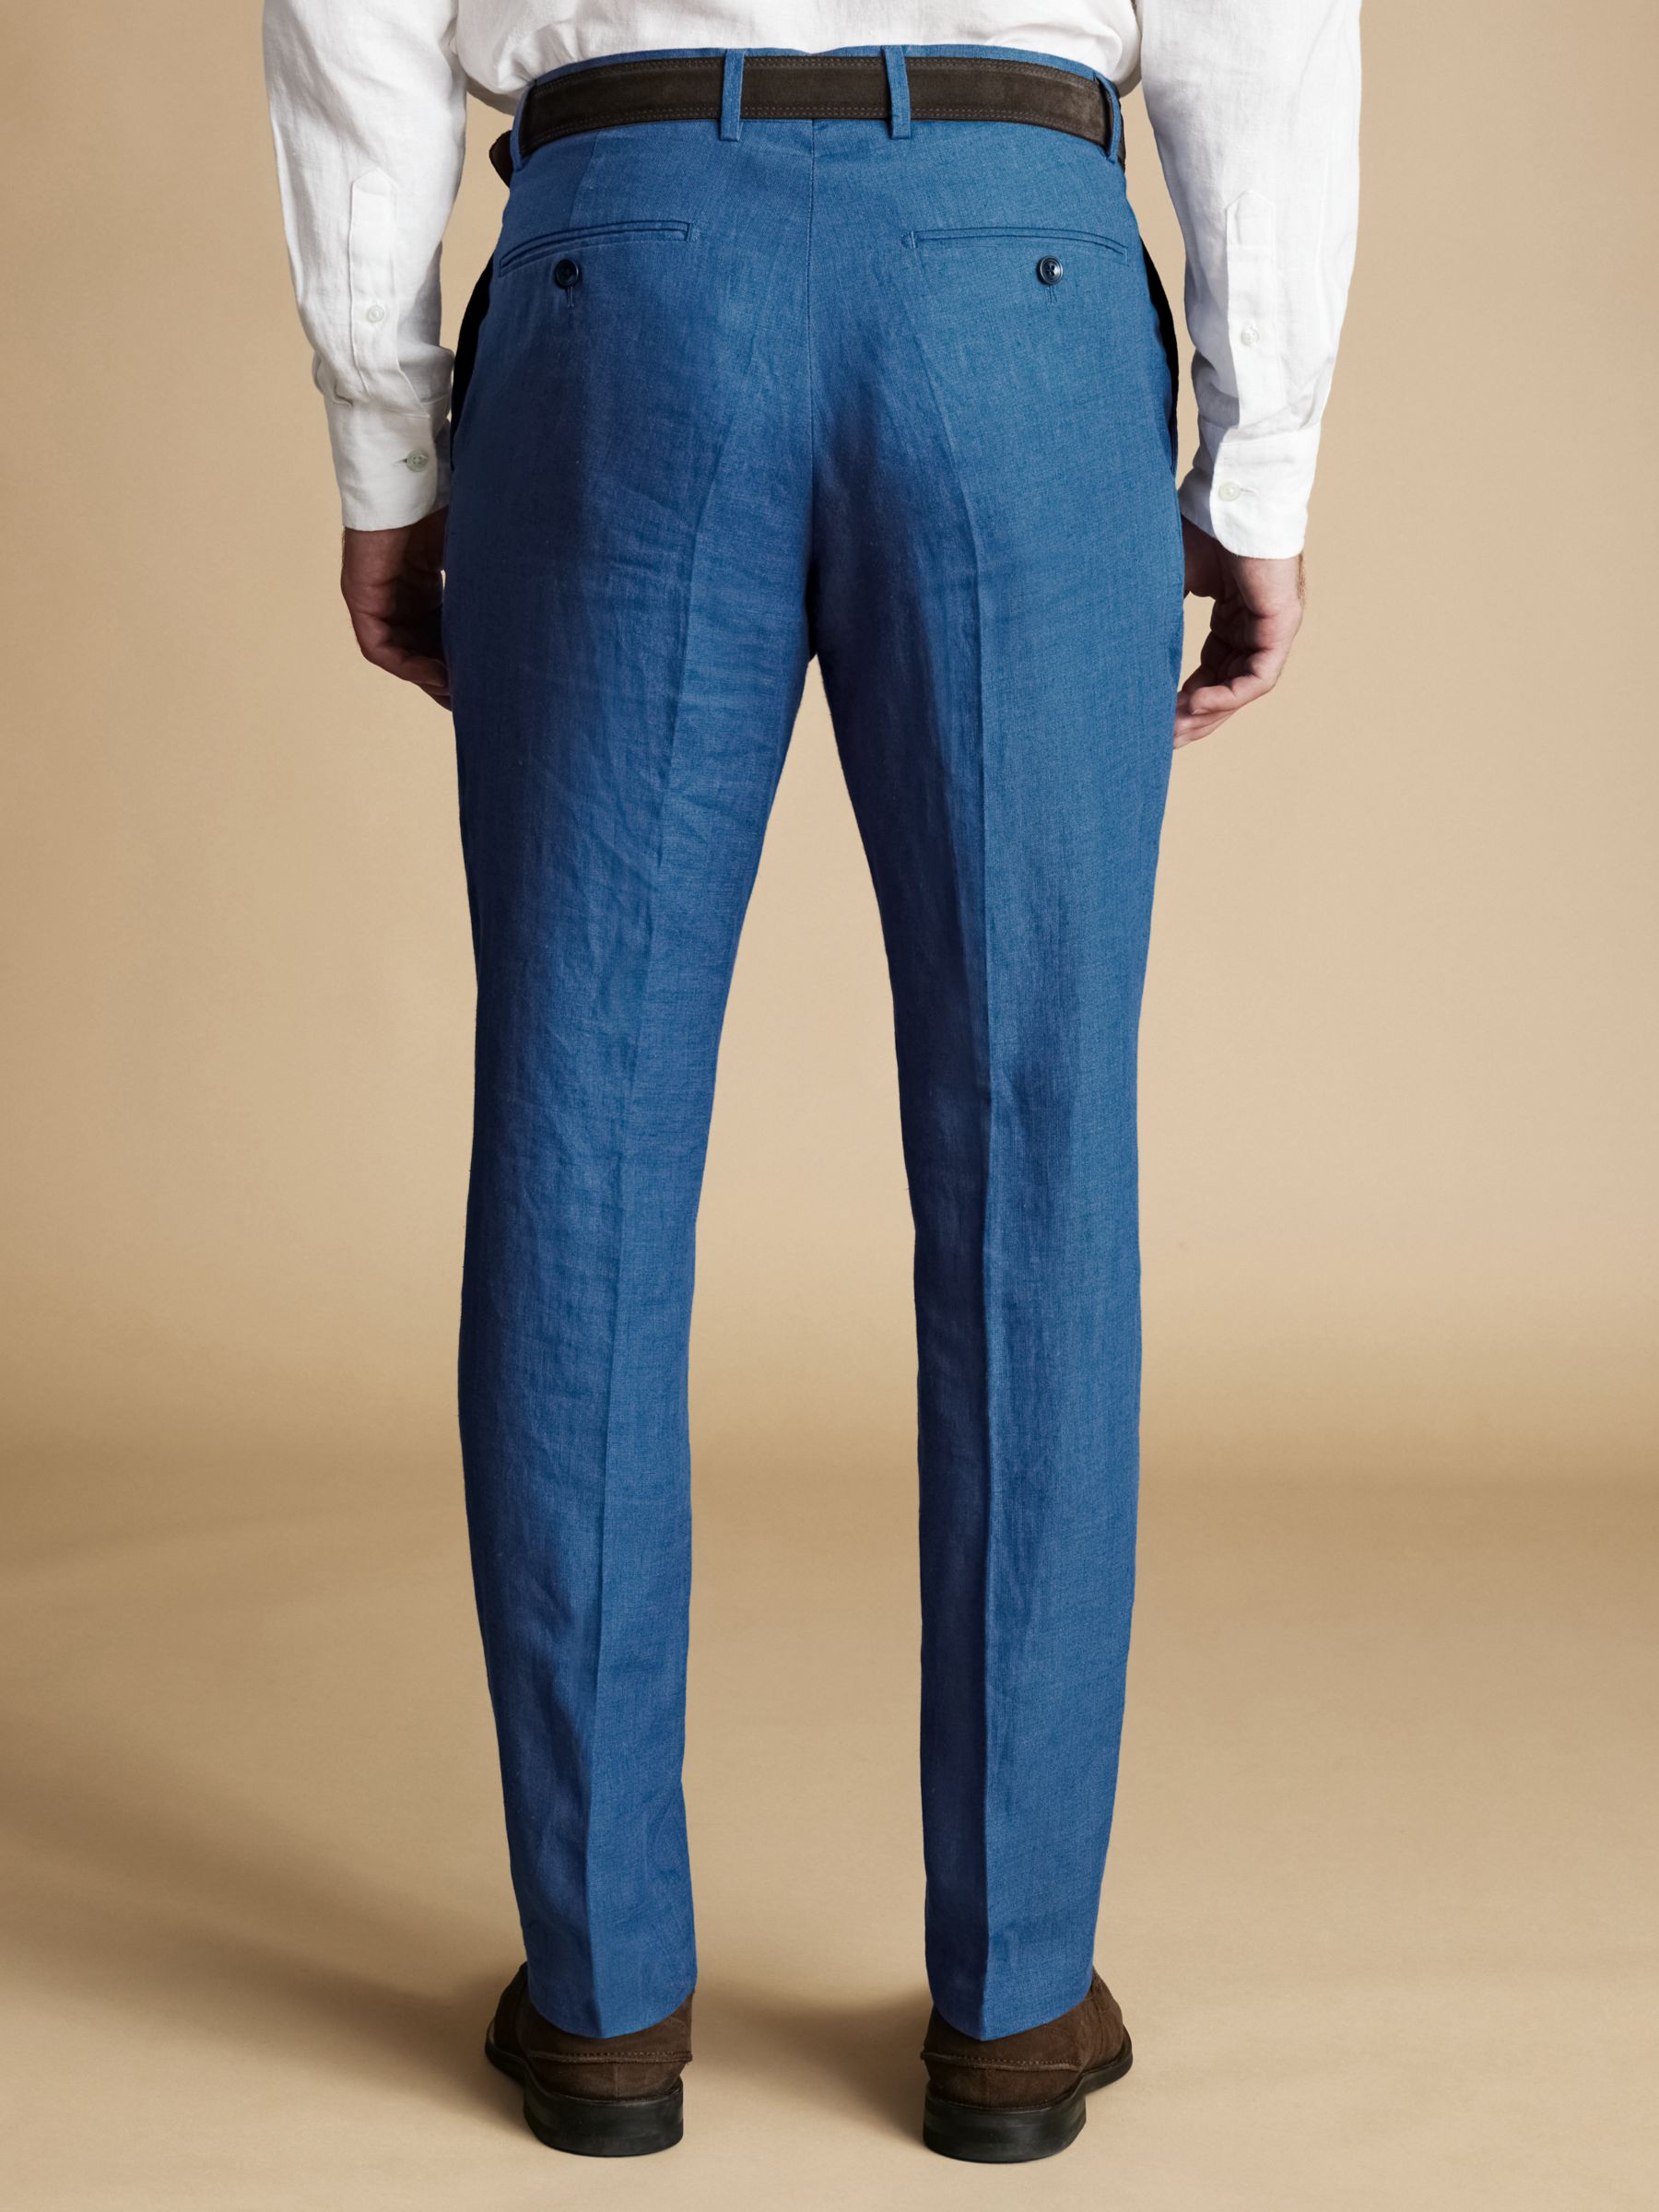 Buy Charles Tyrwhitt Slim Fit Linen Trousers Online at johnlewis.com